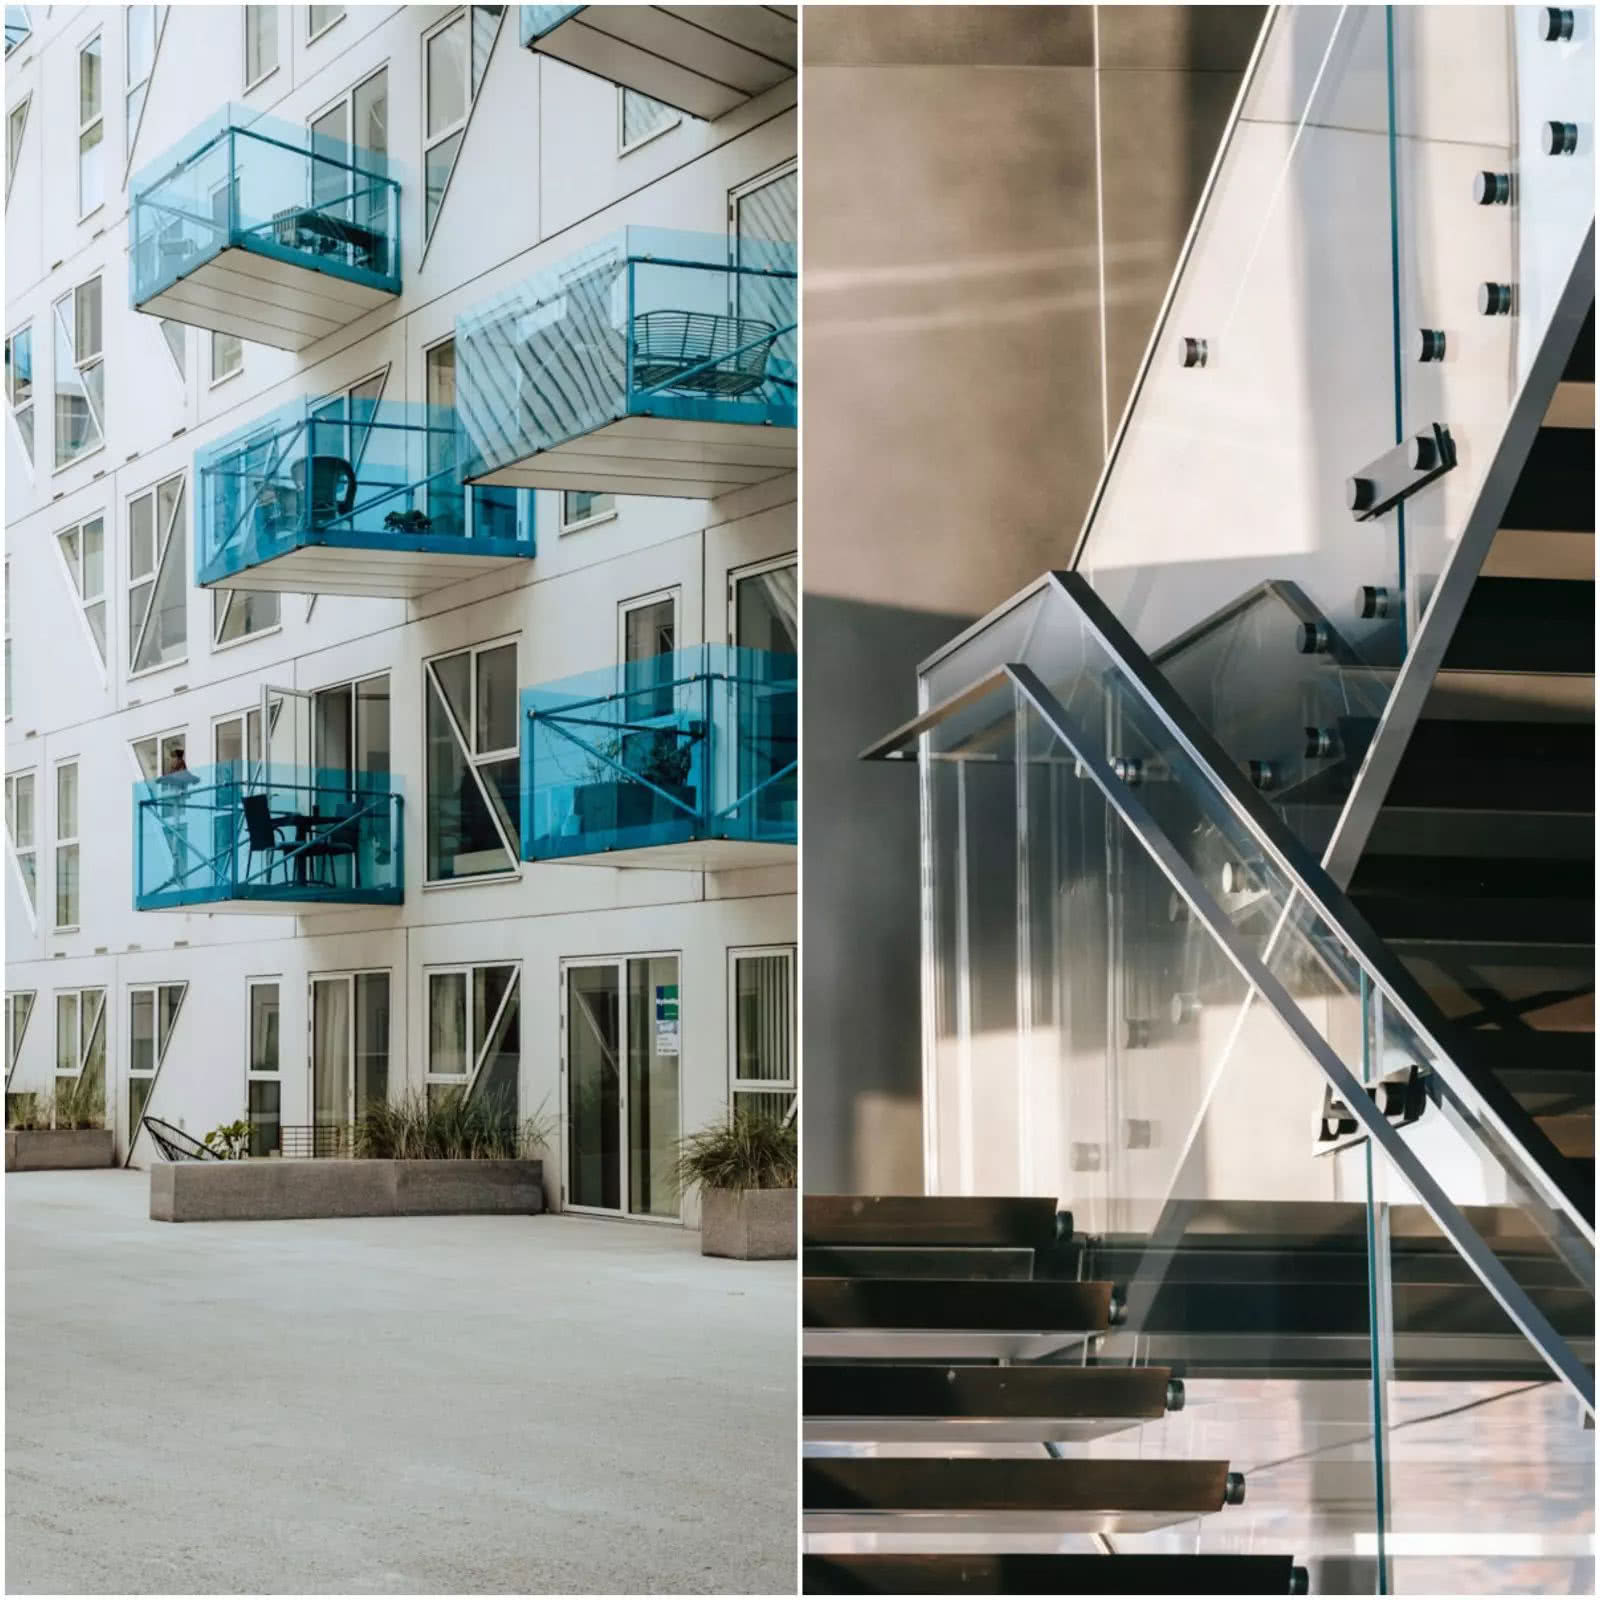 Balustrady balkonów i schodów wykonane ze szkła bezpiecznego. fot. Pilkington IGP